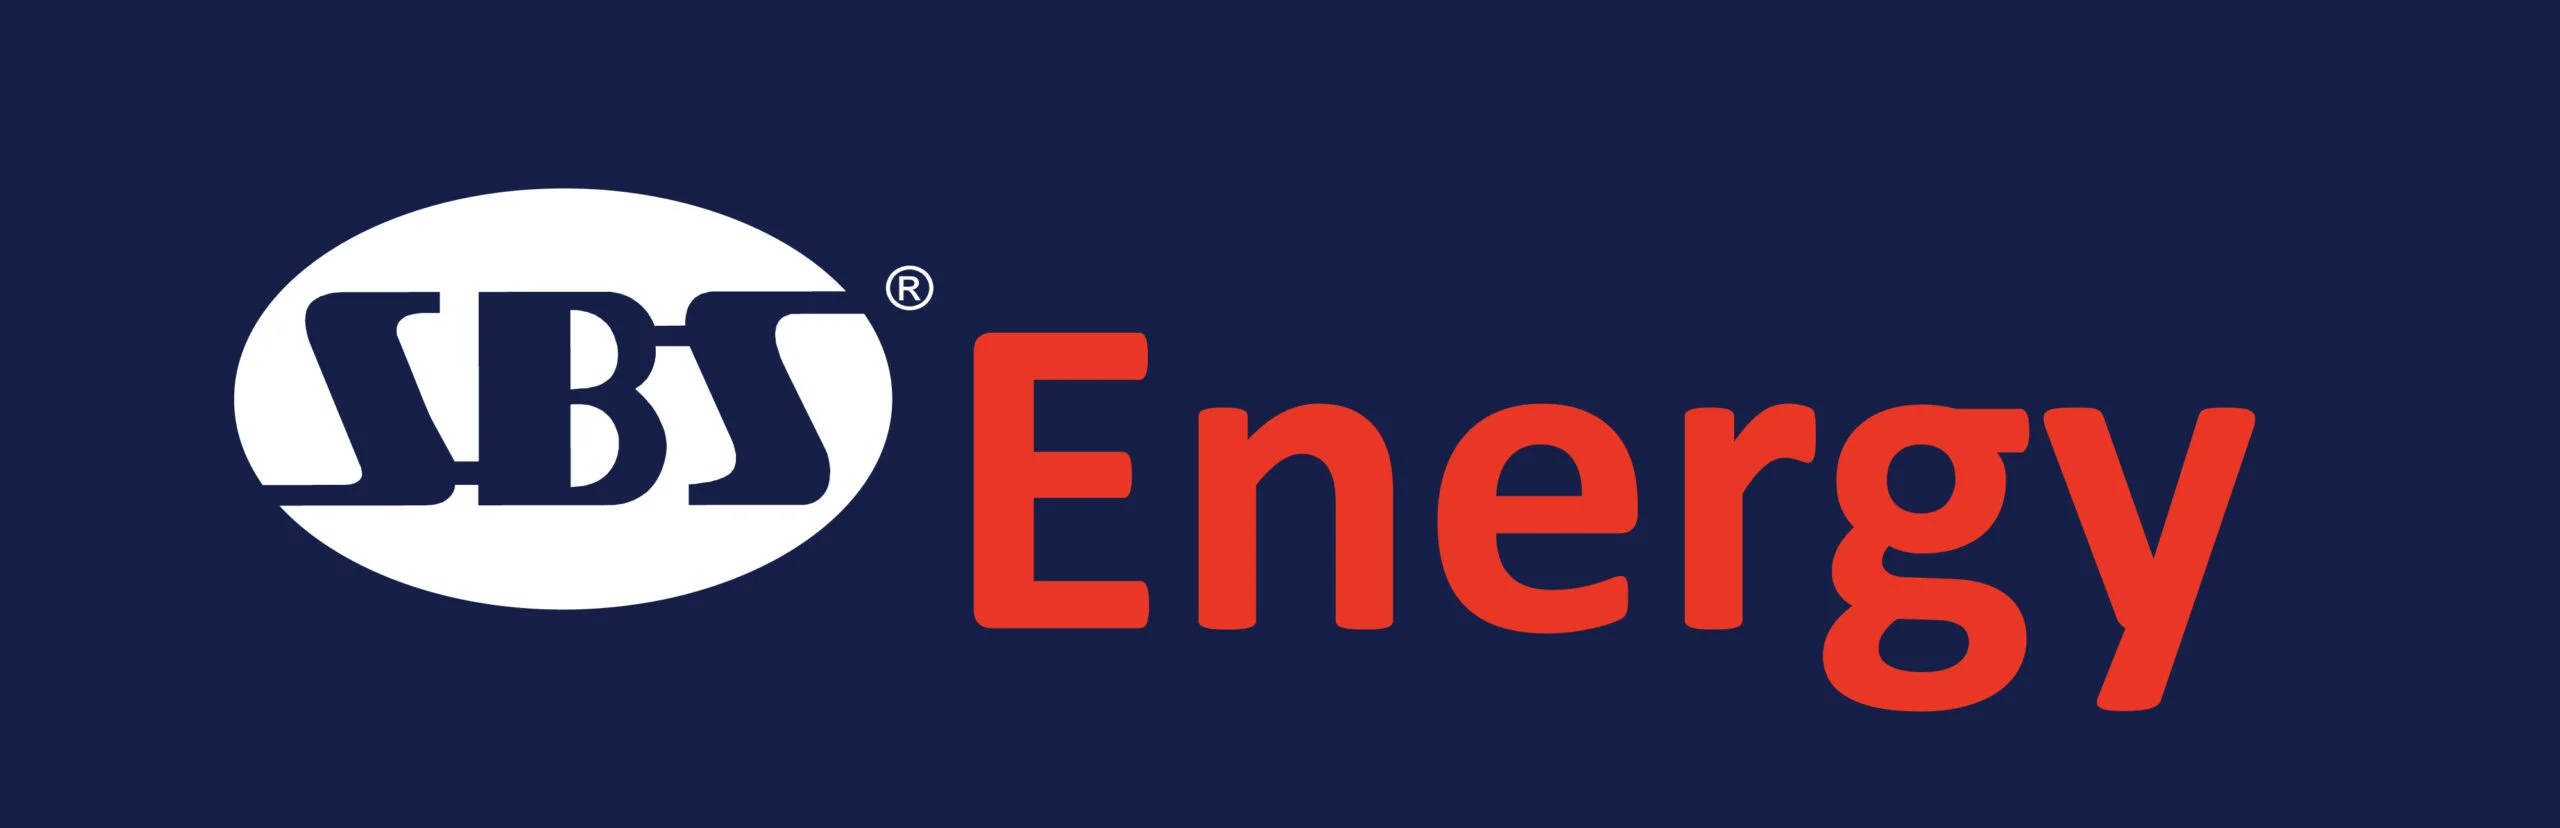 SBS-Group-SBS Energy Logo 04Video Testing